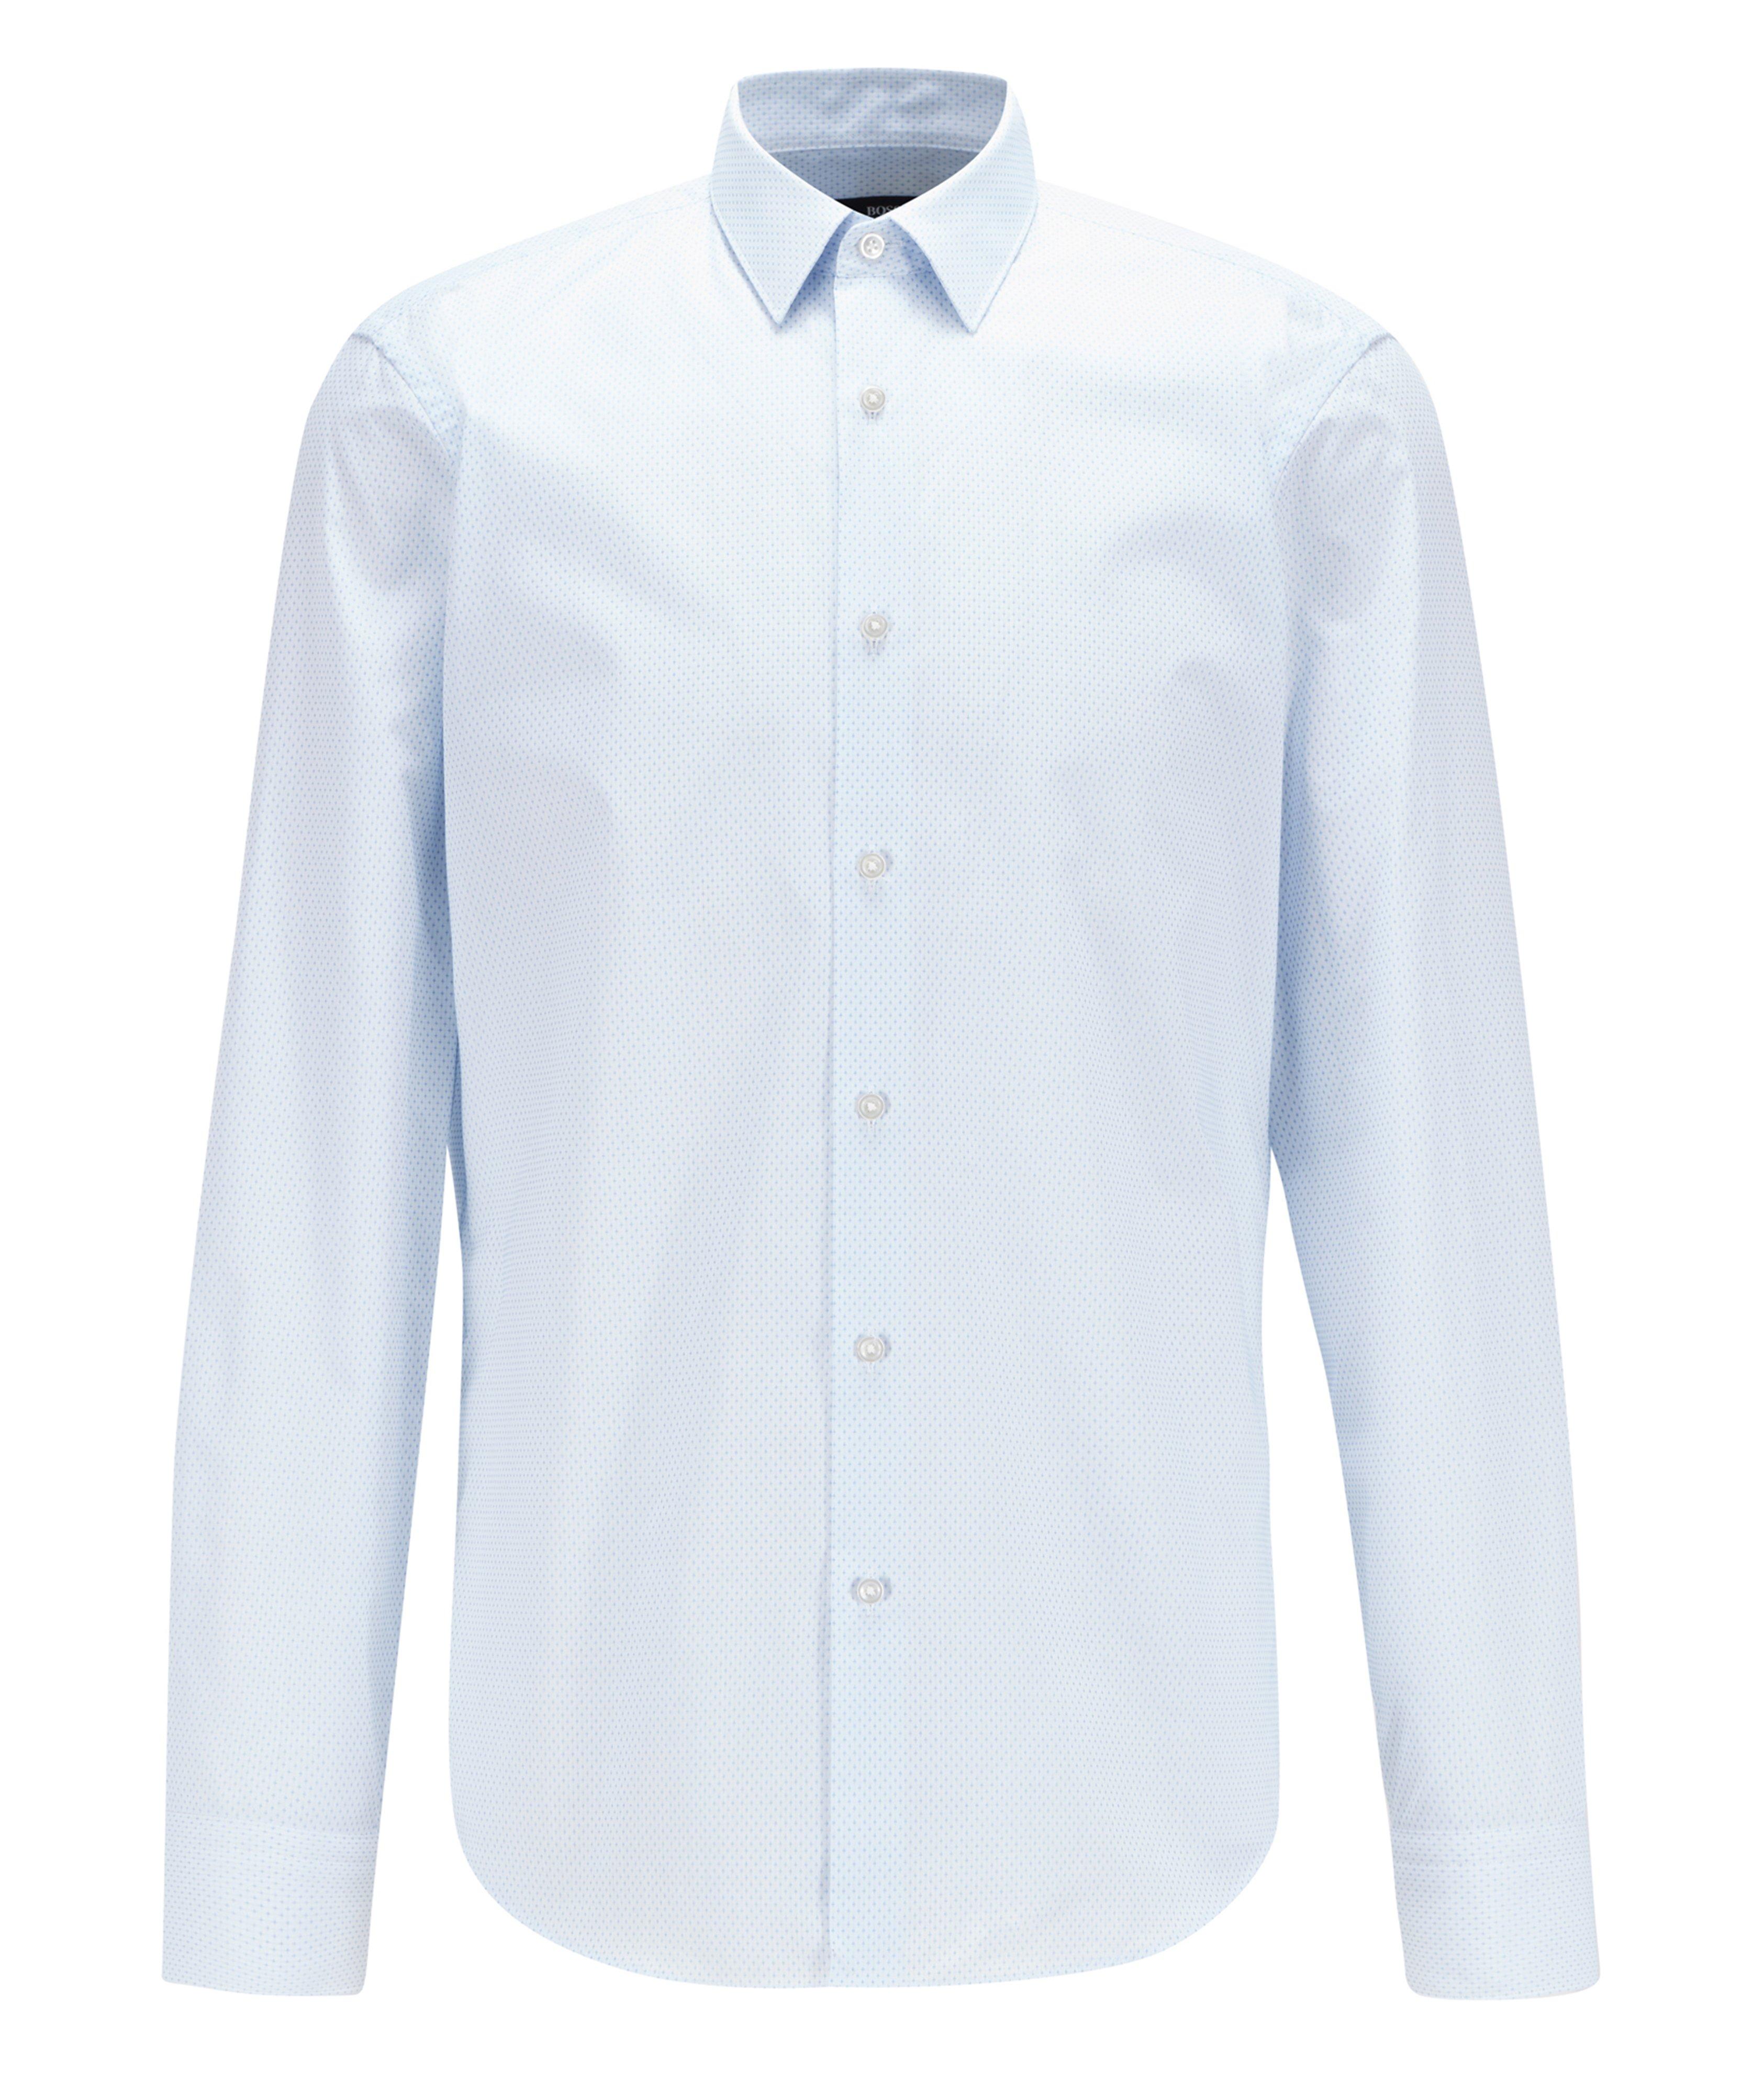 Chemise habillée Eliott en coton à petit motif quadrillé image 0